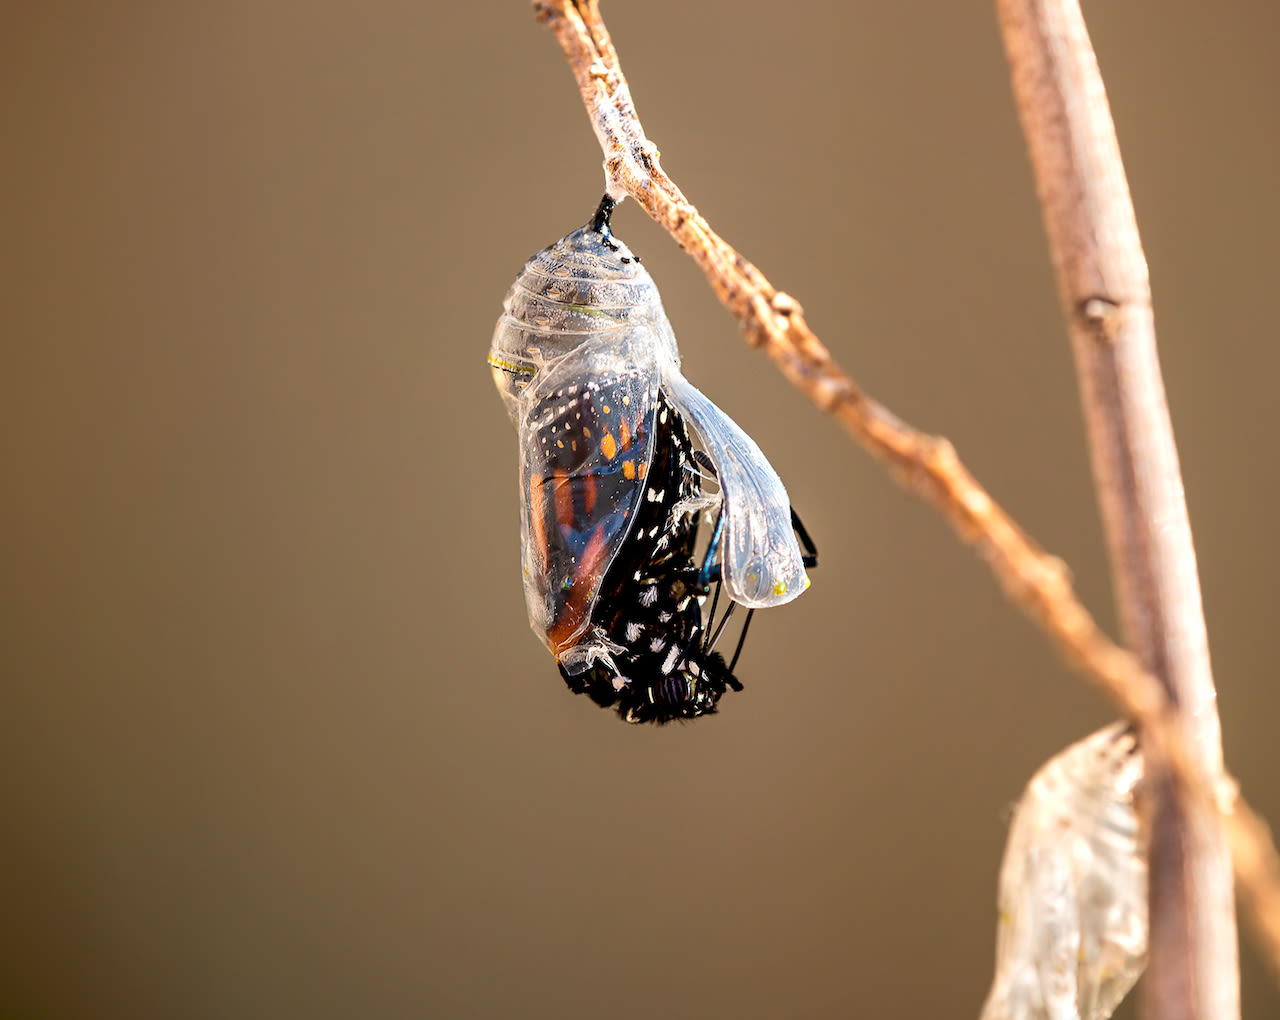 Bij voldoende warmte en zonneschijn breekt de vlinder uit de cocon. Foto: Adobe Stock / leekris